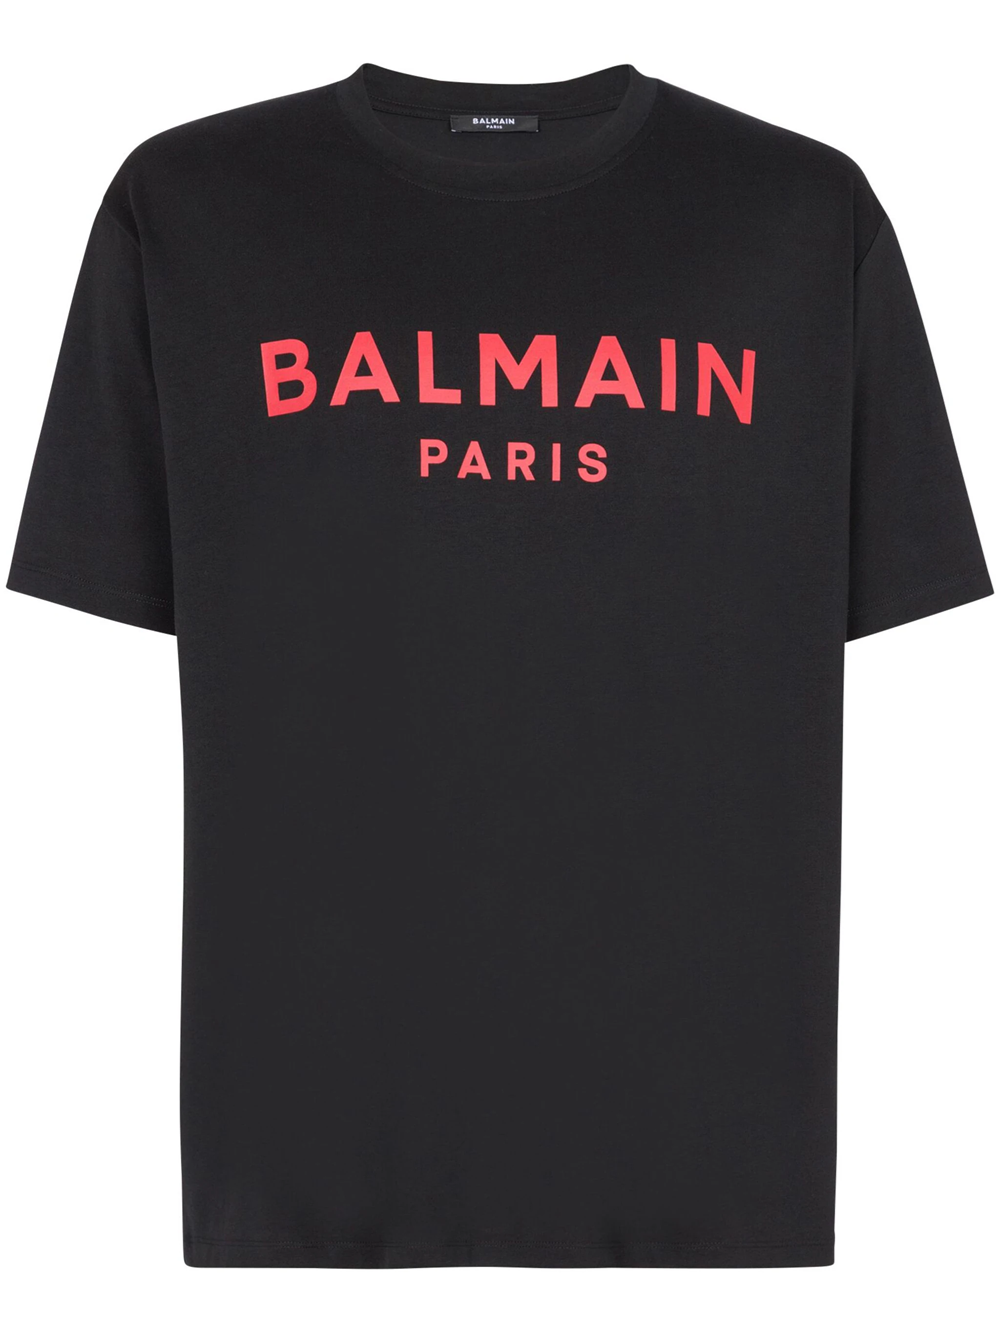 BALMAIN PARIS T-SHIRT WITH PRINT